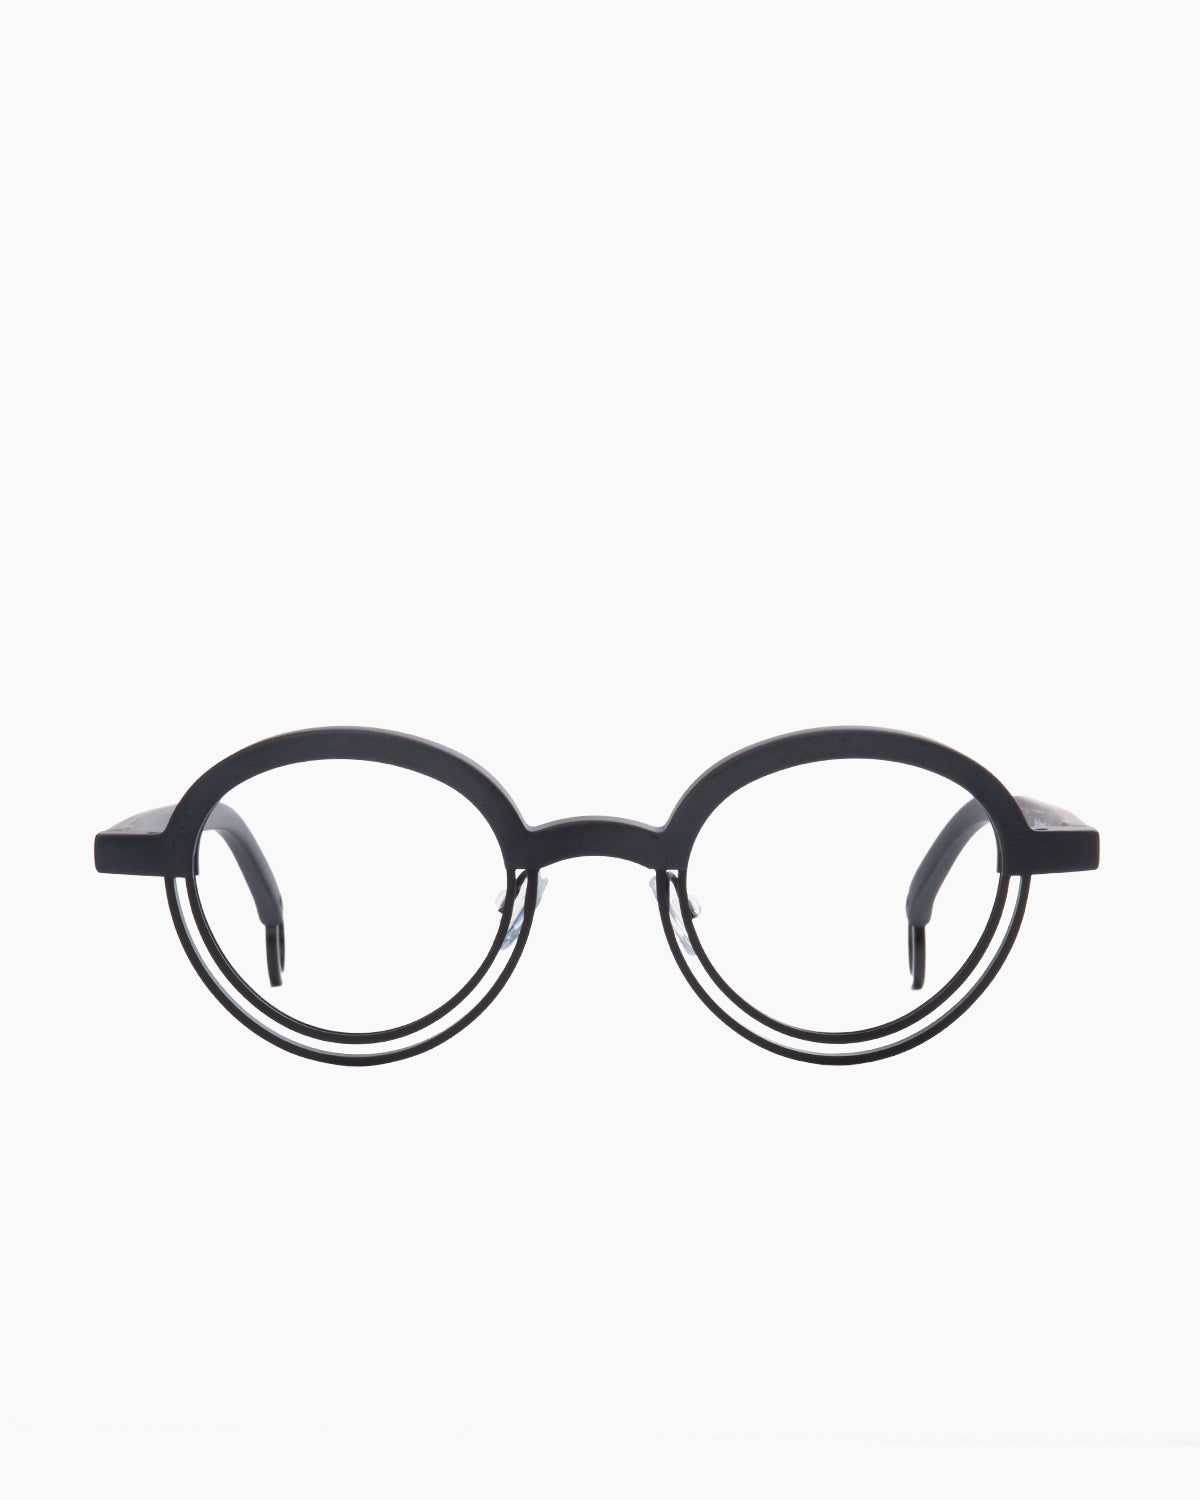 Theo - BUMPER - 1 | Bar à lunettes